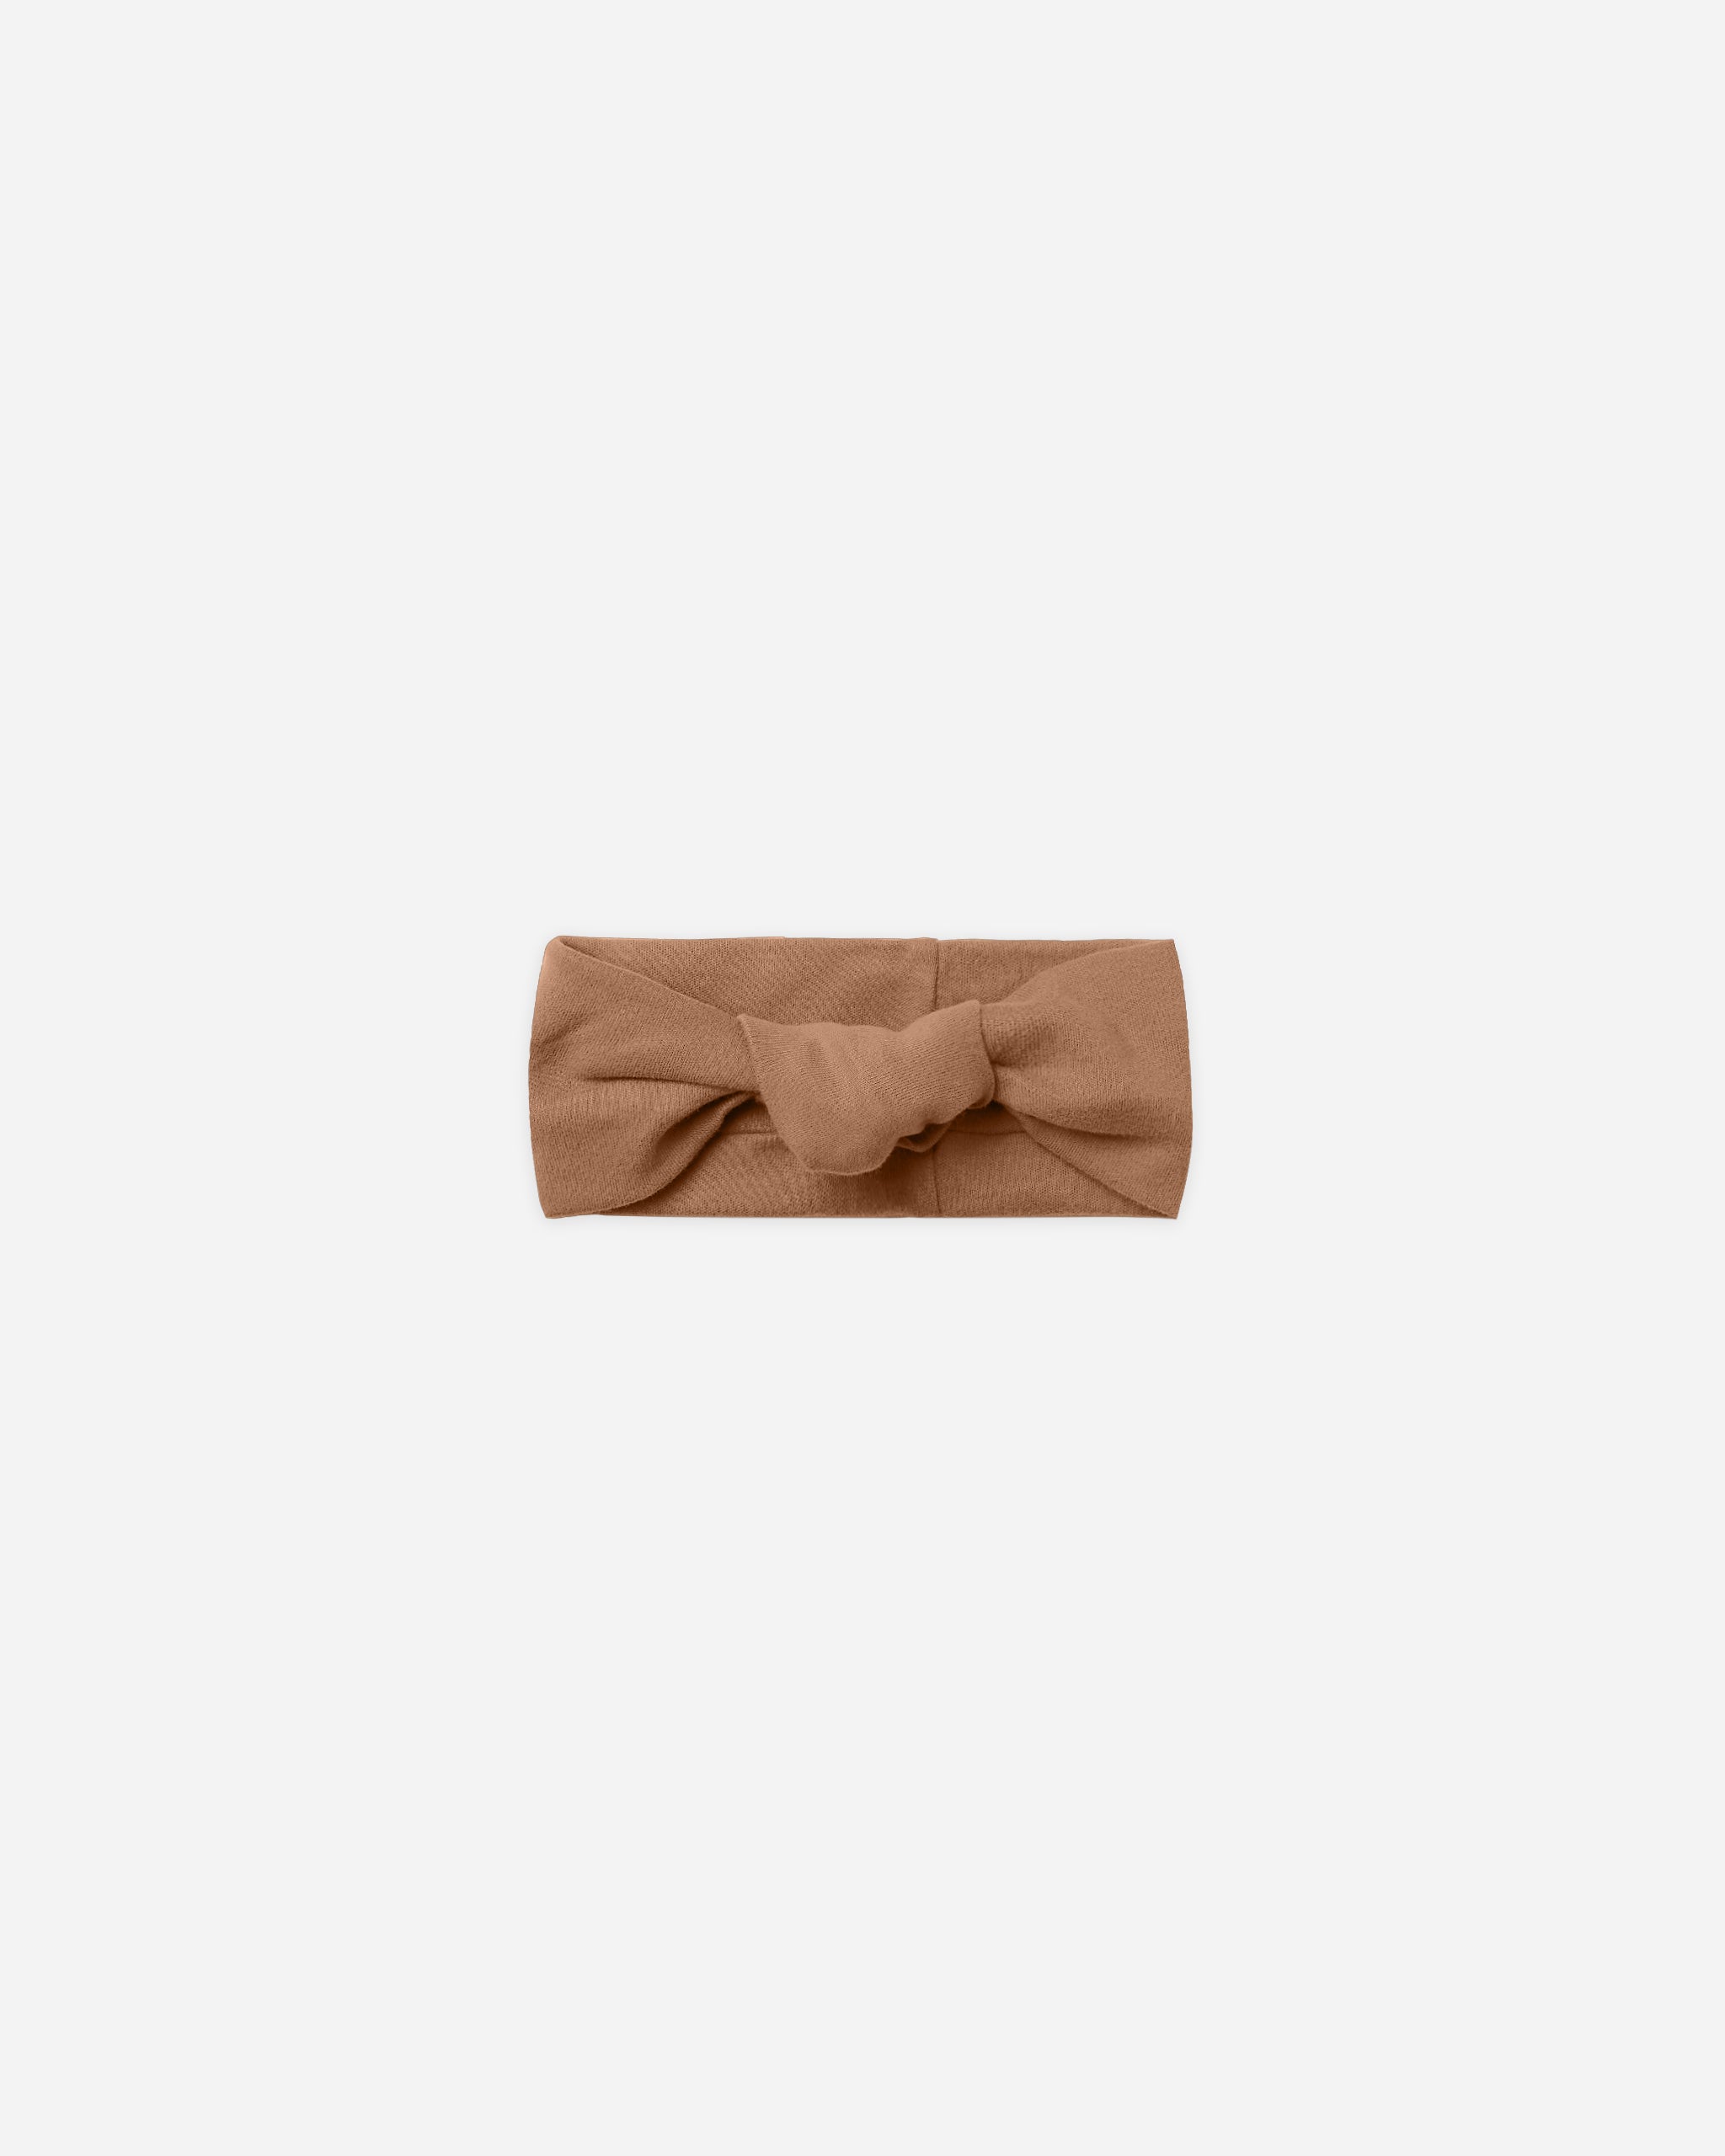 Knotted Headband || Cinnamon